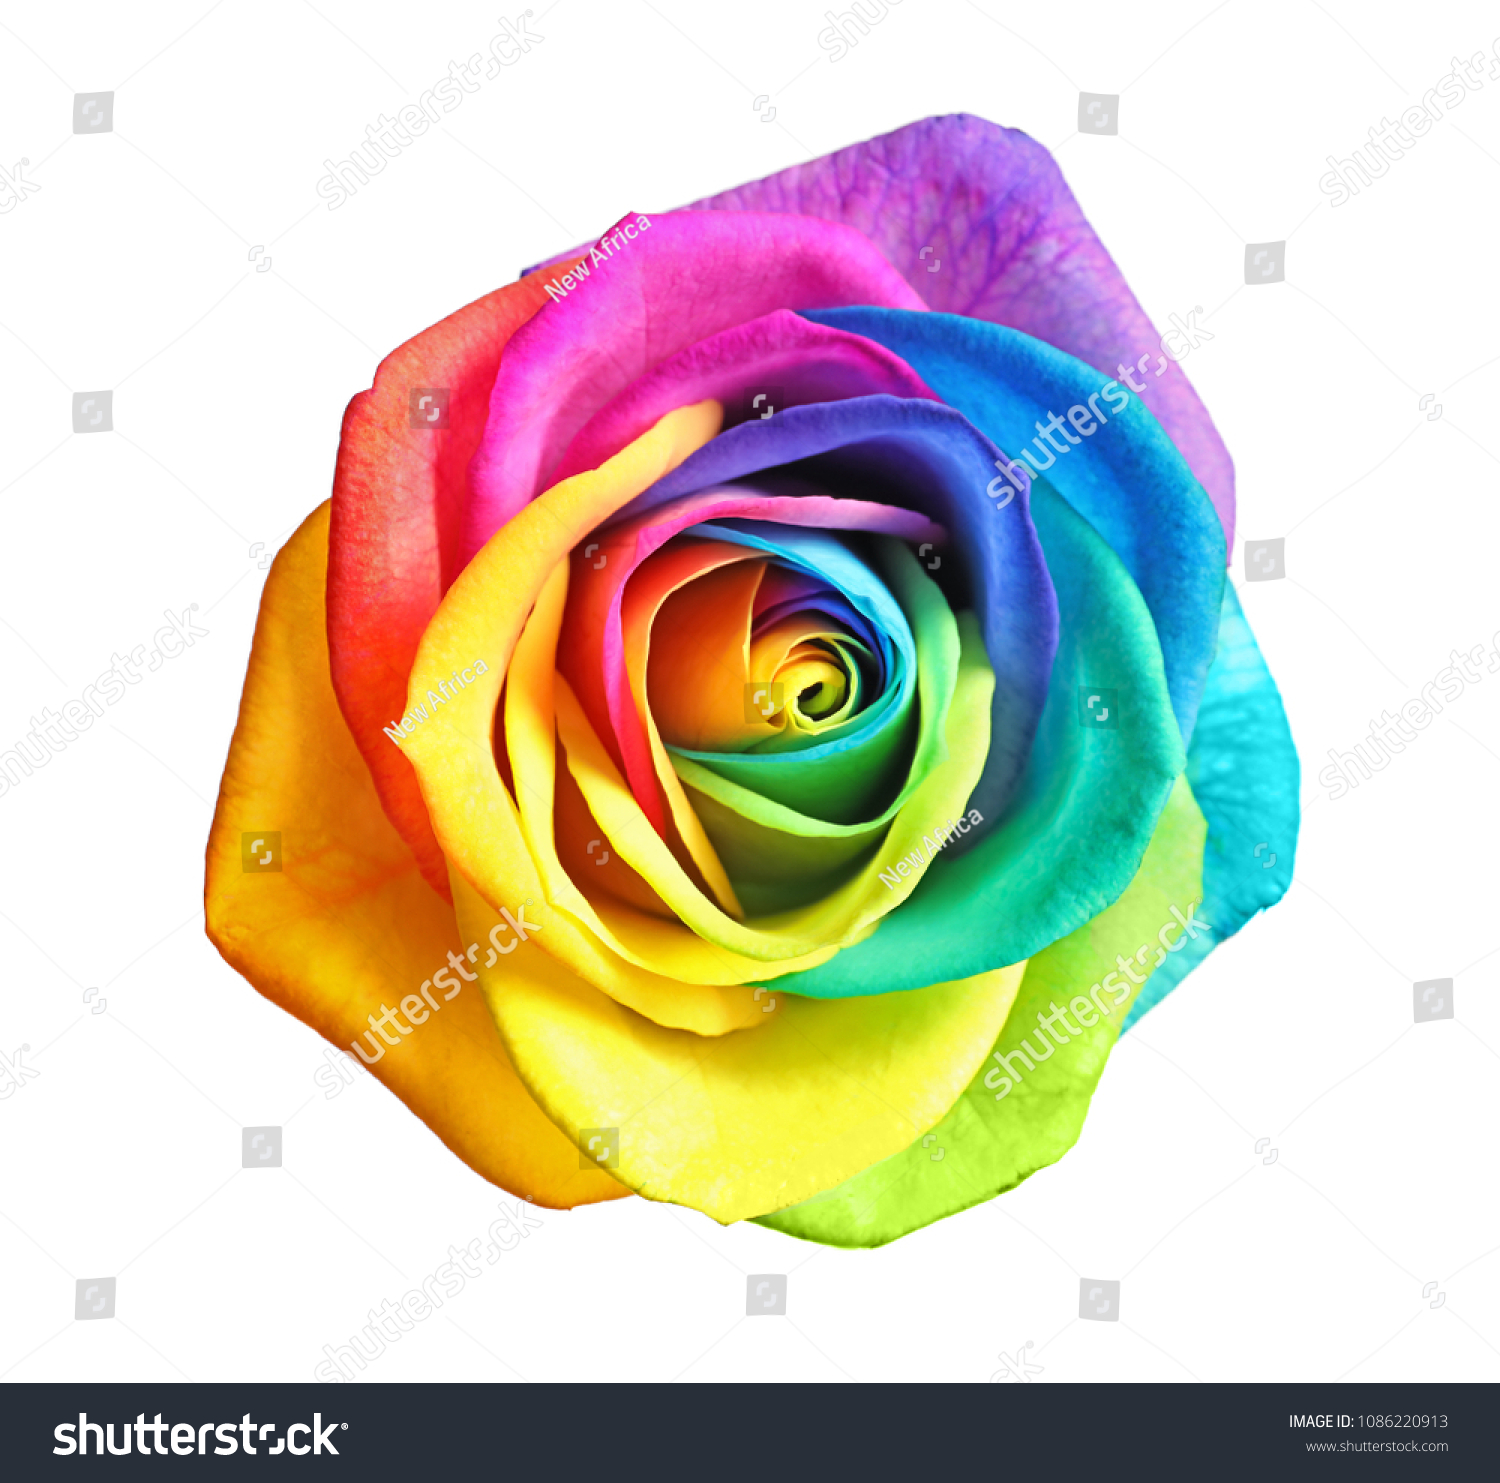 Numero civico Qualsiasi Numero Disponibile Decorato a Mano nel Regno Unito Regno Unito Rainbow Decors Ltd Majestic Rose House con Numero civico Roses in Ceramica 